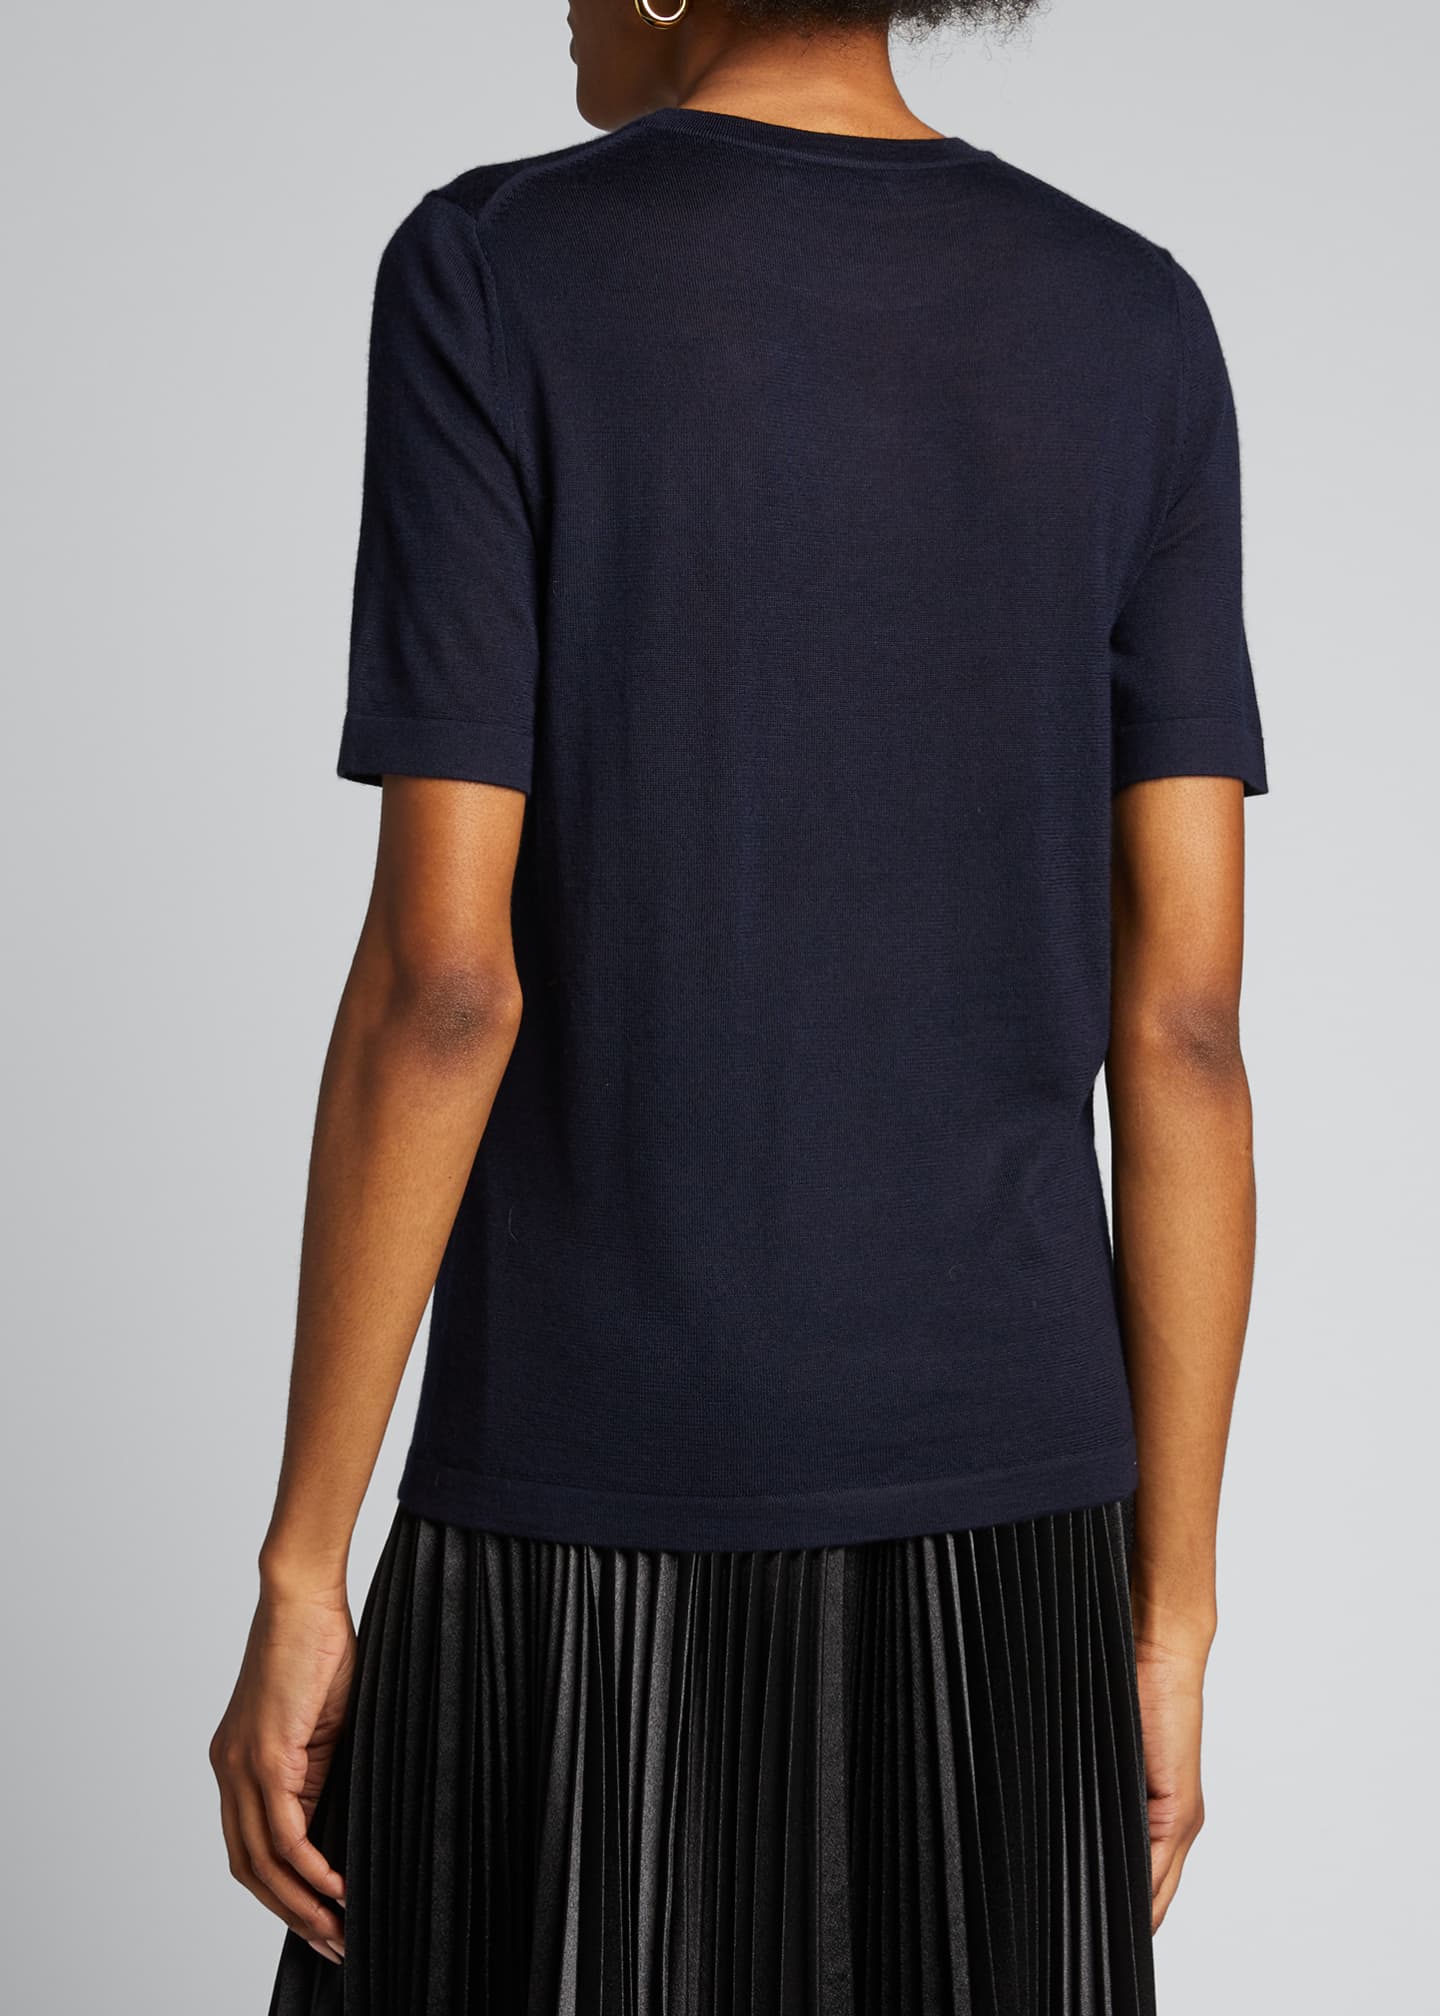 Gabriela Hearst Fergus Feather Knit T-shirt - Bergdorf Goodman